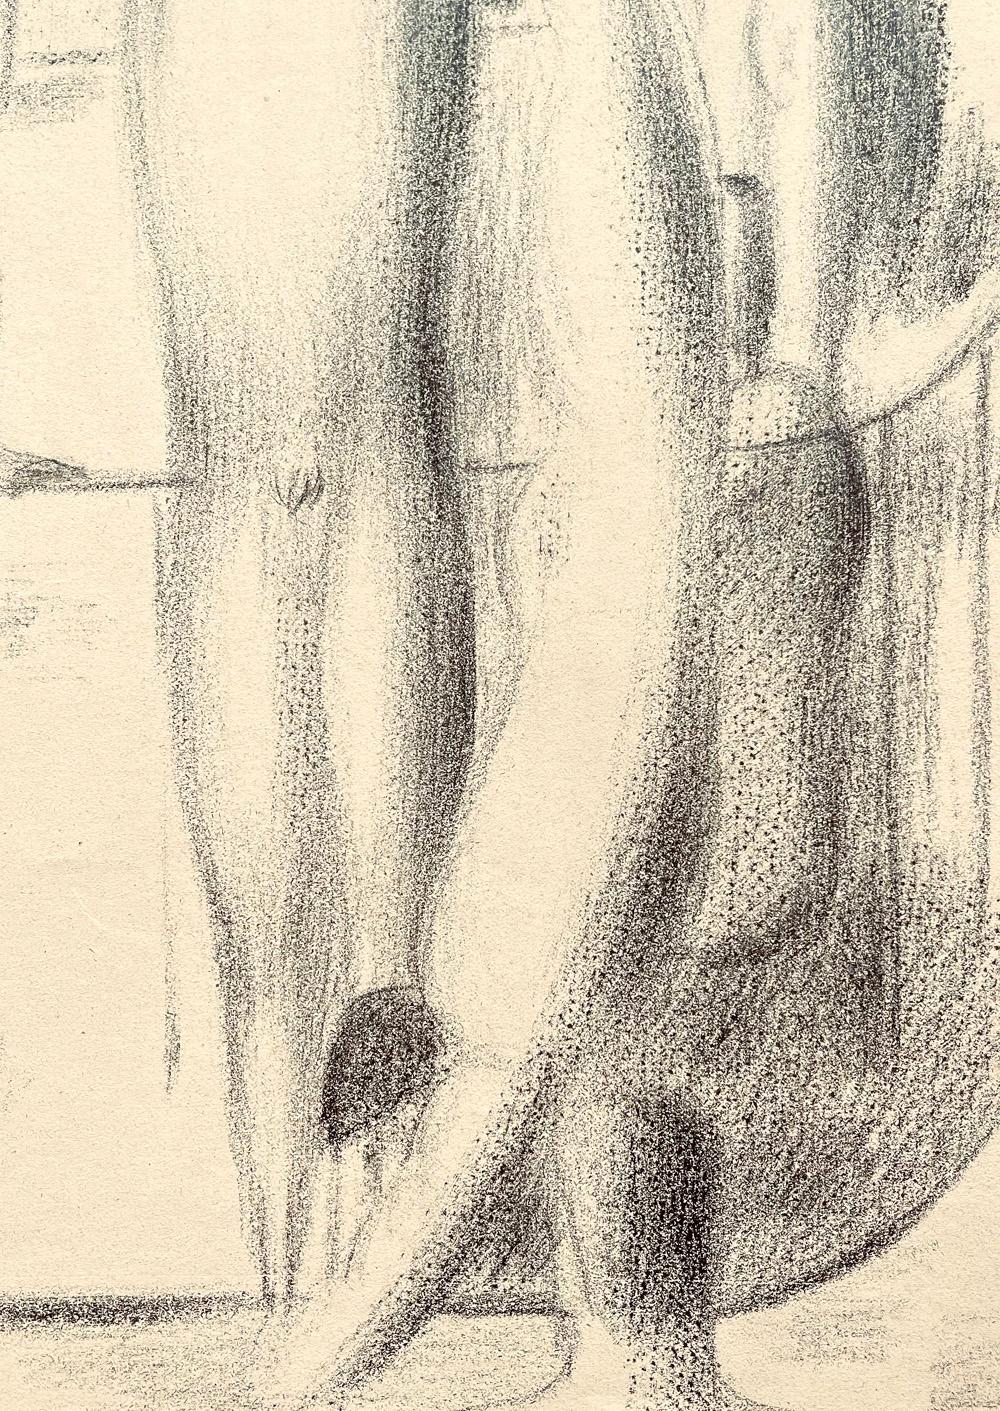 Diese schöne und stimmungsvolle Zeichnung einer Reihe von männlichen Aktfiguren im Schwimmbad - einer taucht, einer macht sich zum Tauchen bereit, andere stehen vor dem Spiegel oder beobachten still - wurde von Walter Wörn in den späten 1940er